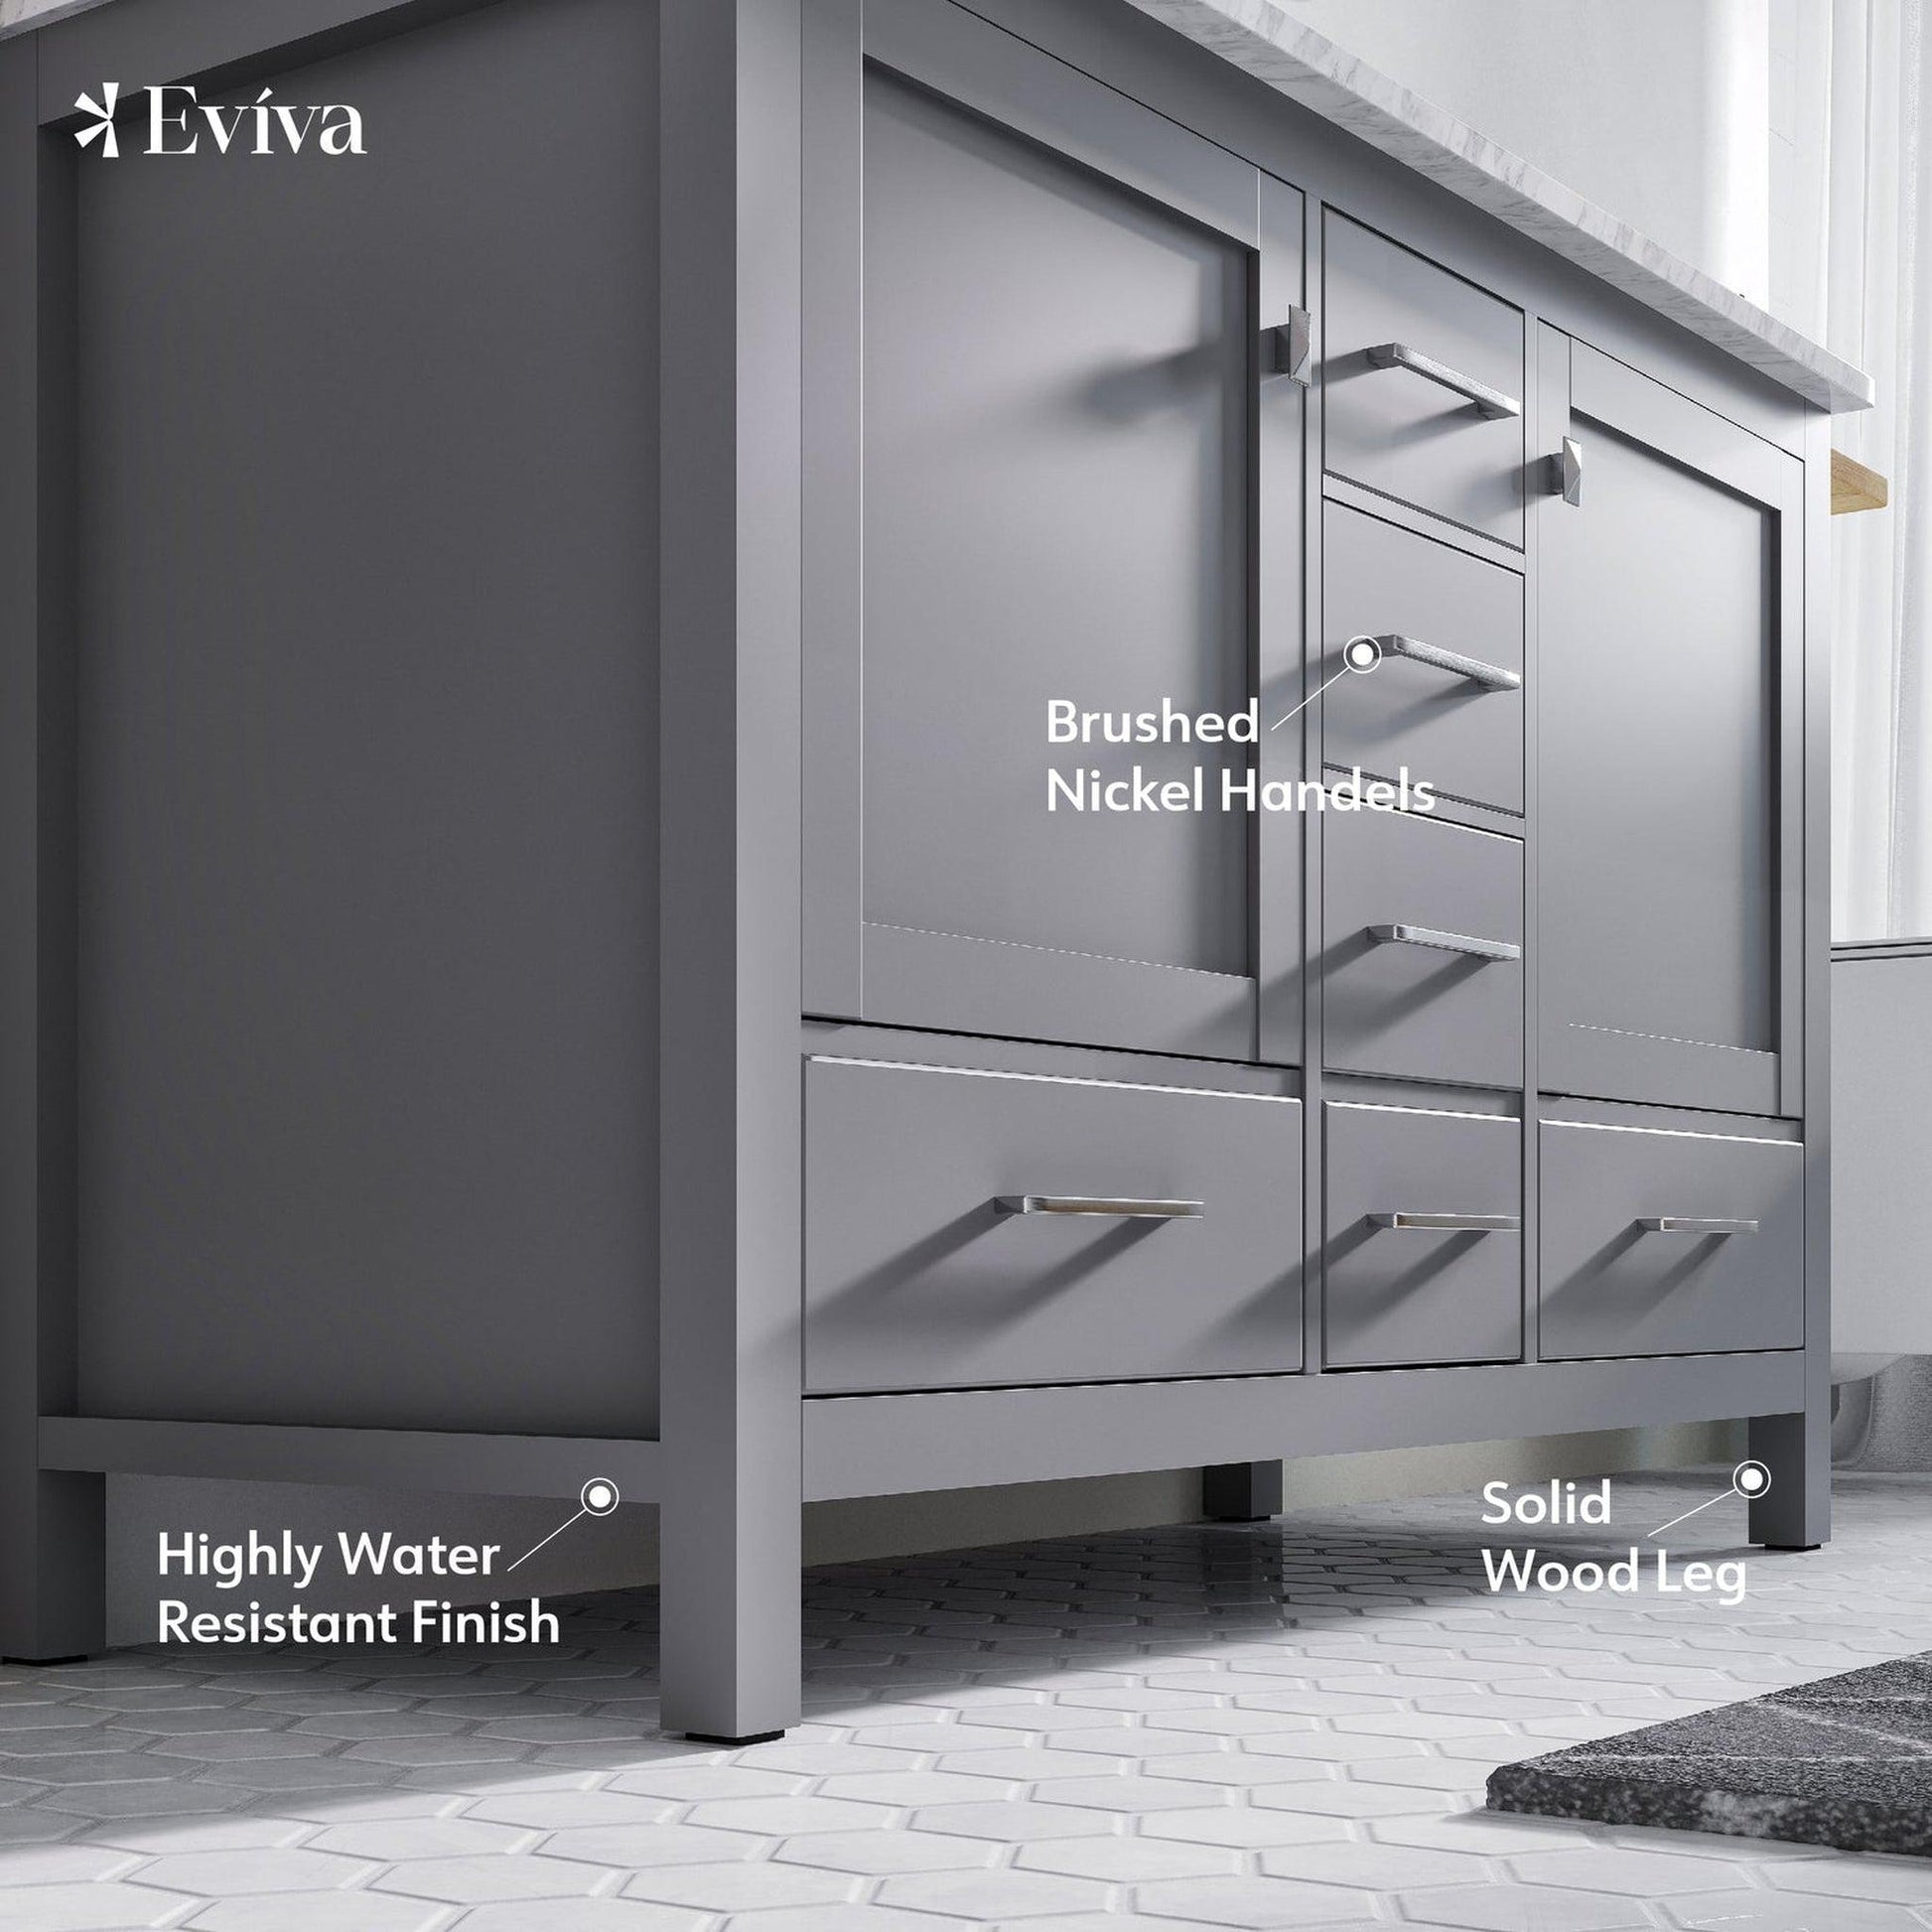 Eviva Aberdeen 48" x 34" Gray Freestanding Bathroom Vanity With Double Undermount Sink